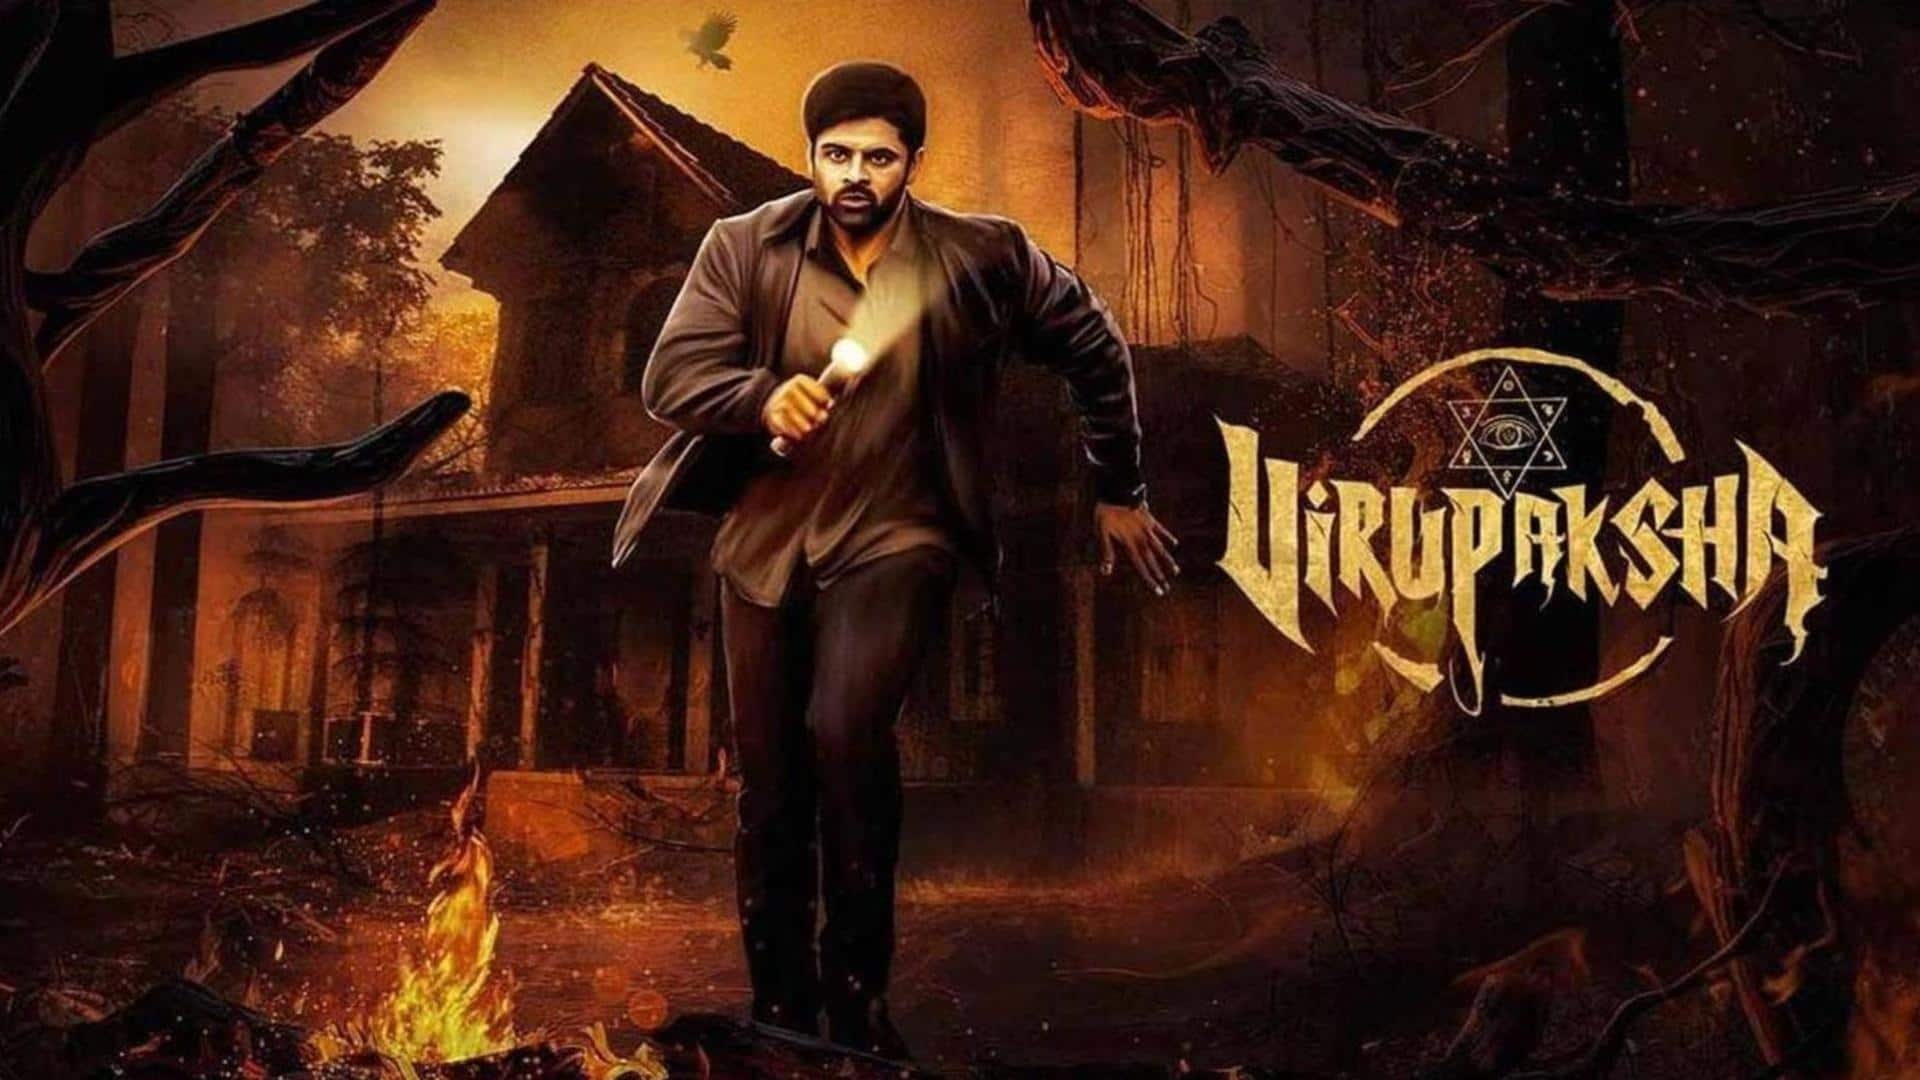 Box office: 'Virupaksha' holding the fort quite well